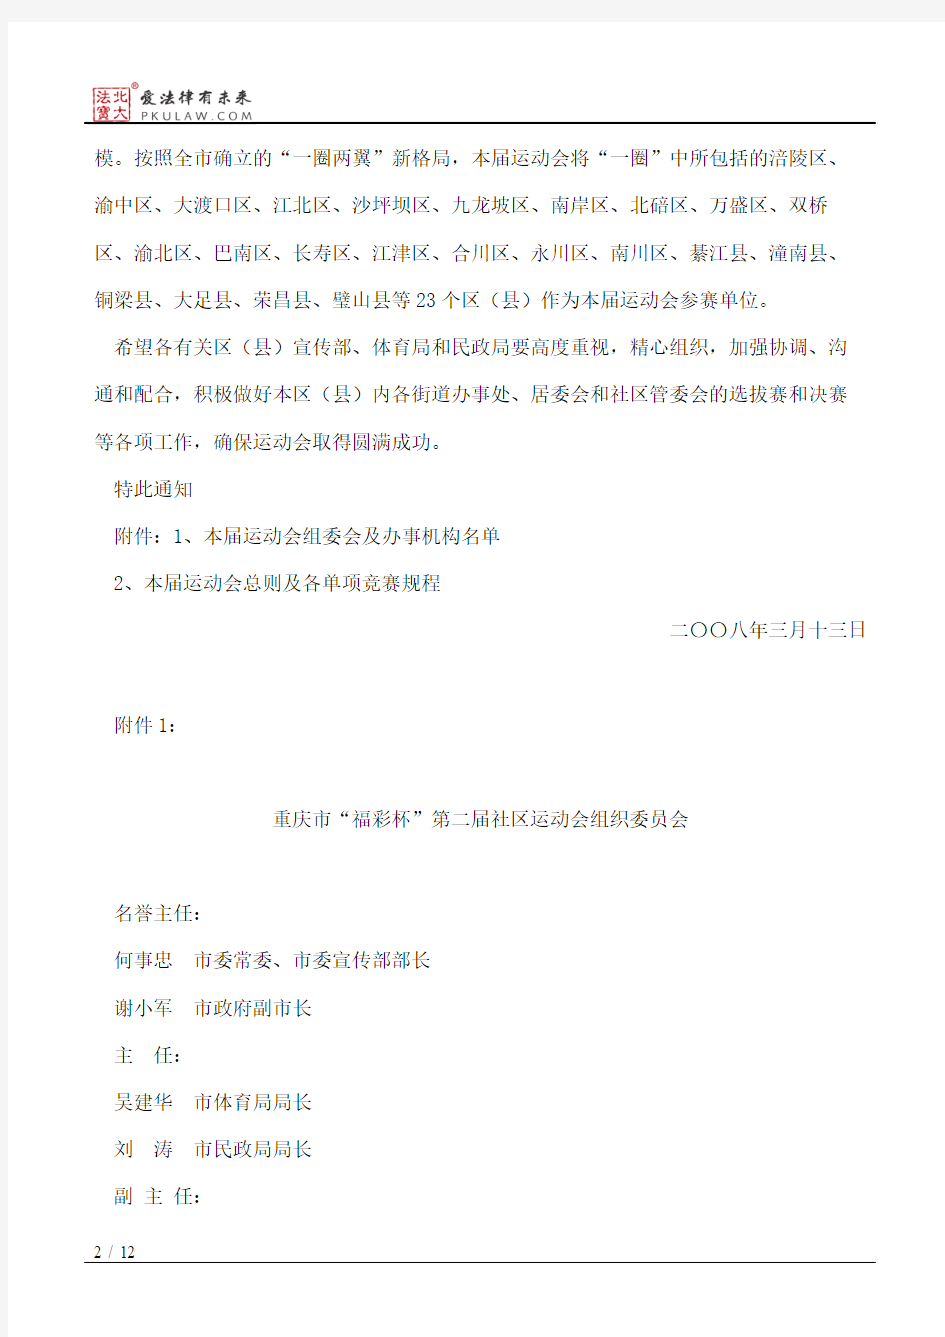 中共重庆市委宣传部、重庆市体育局、重庆市民政局关于举办重庆市